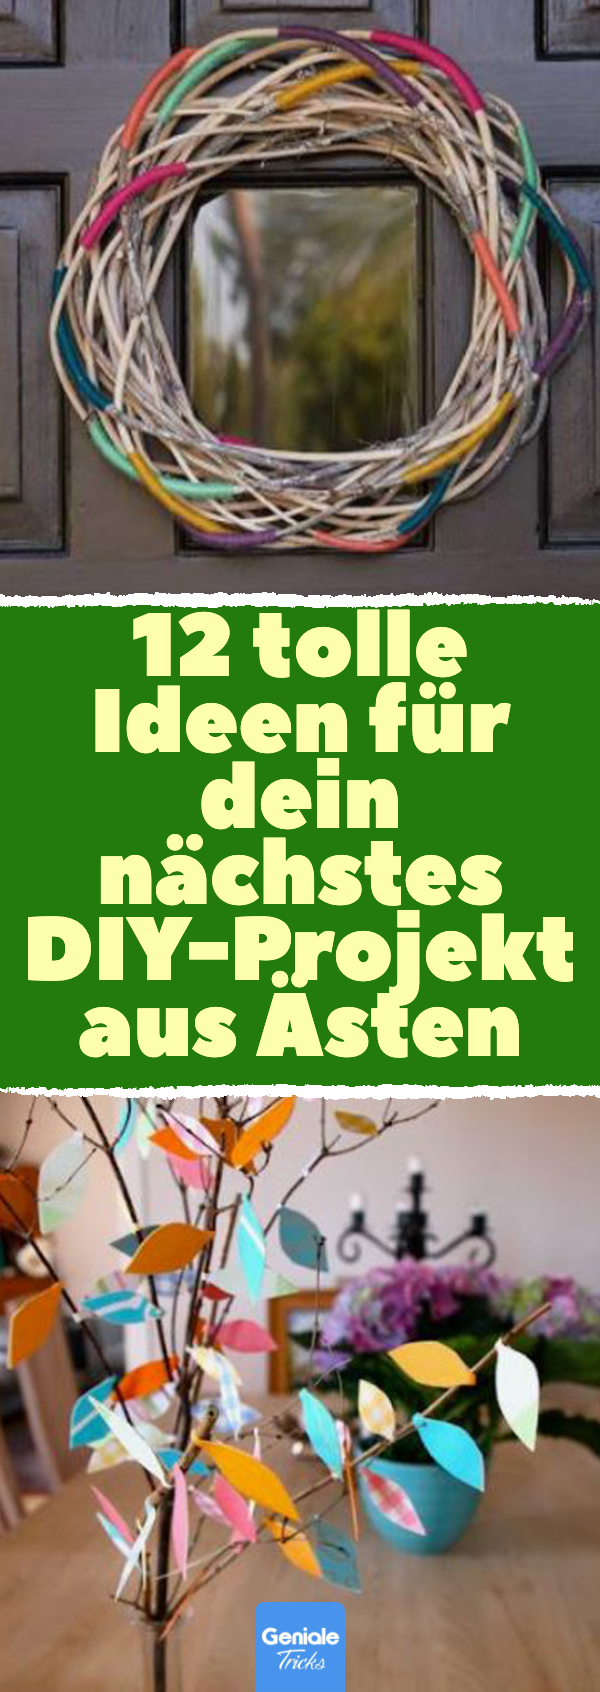 12 tolle Ideen für dein nächstes DIY-Projekt aus Ästen